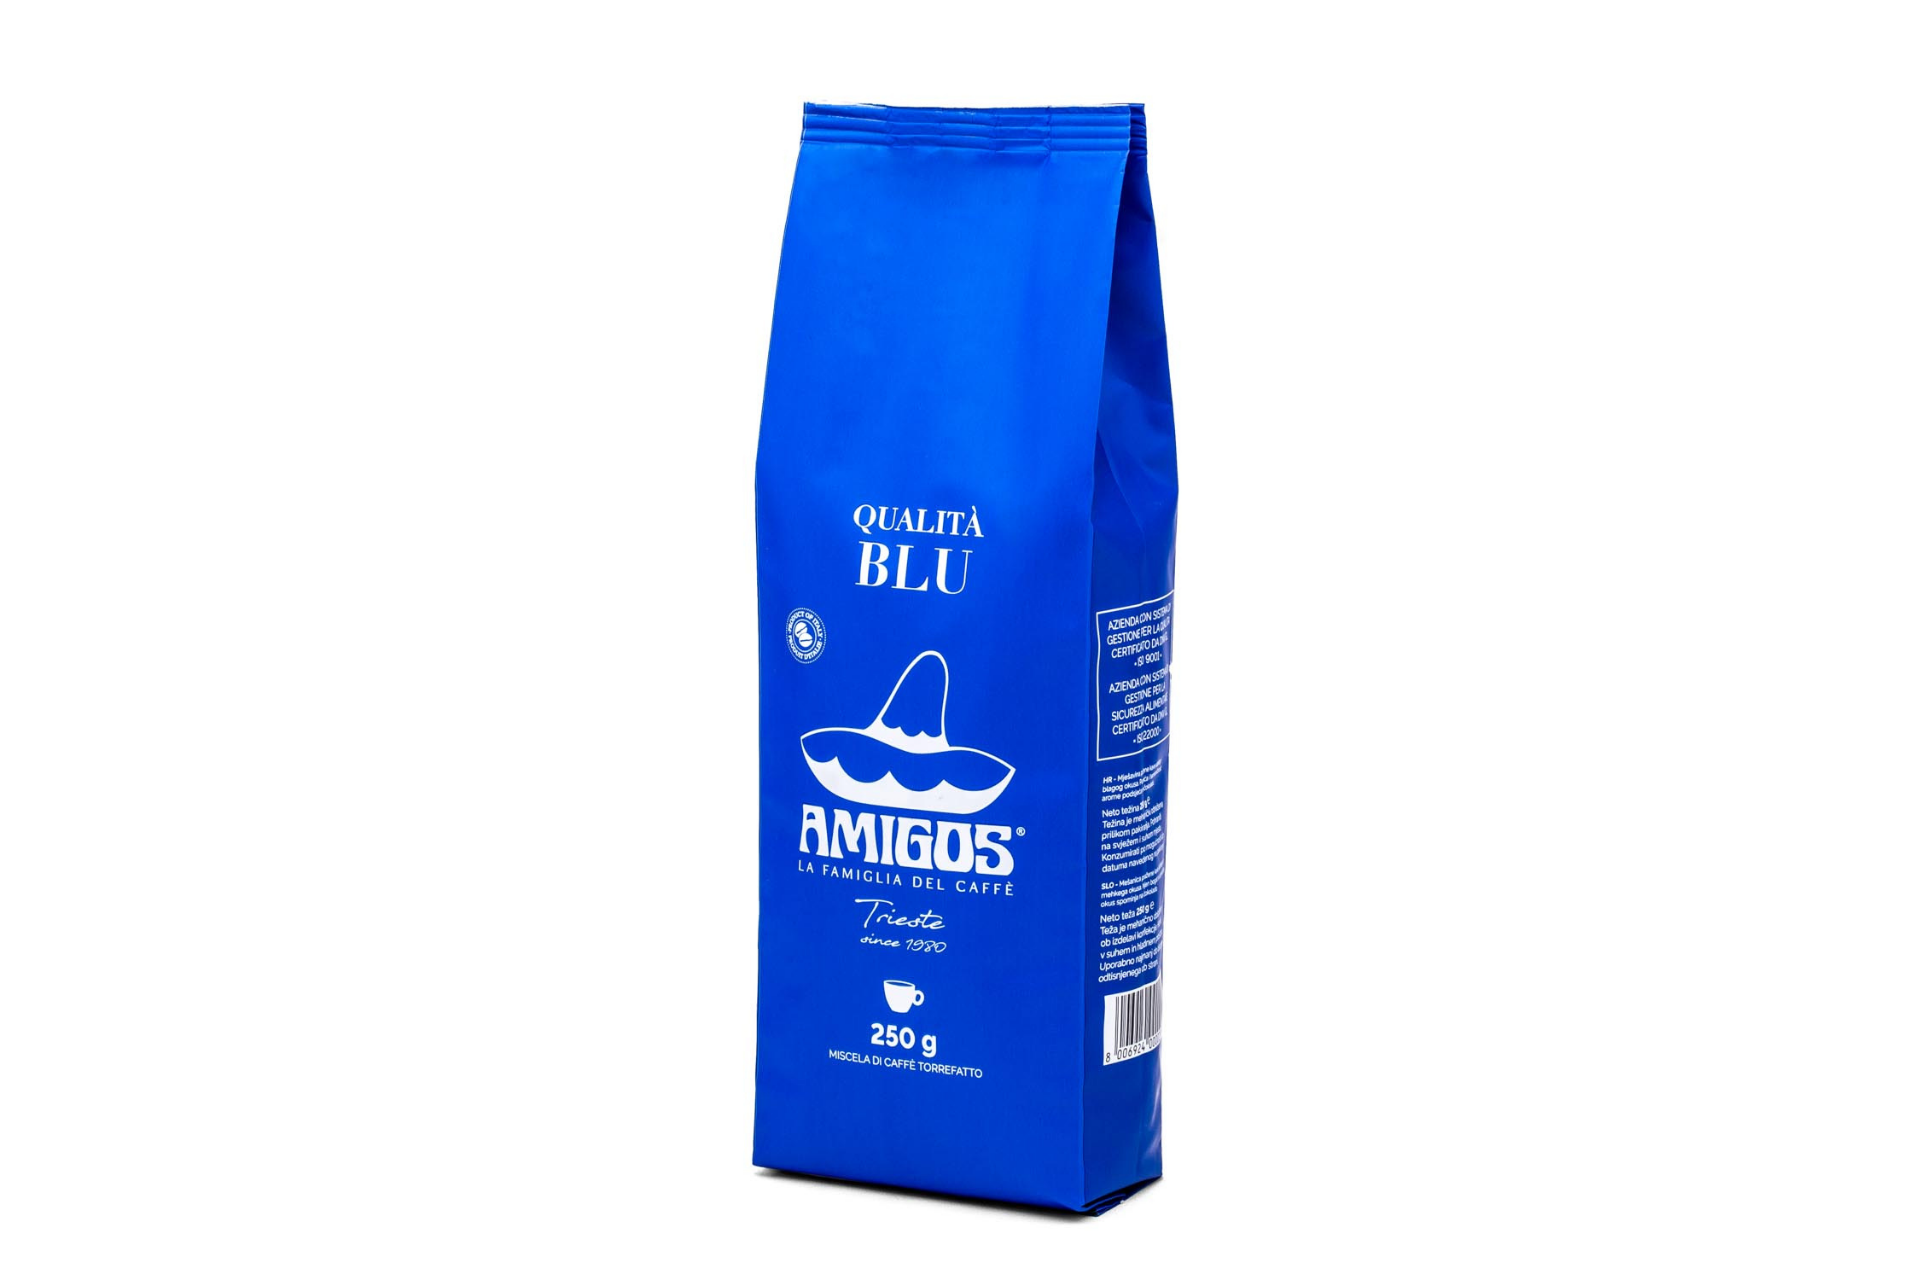 Qualità Blu coffee beans